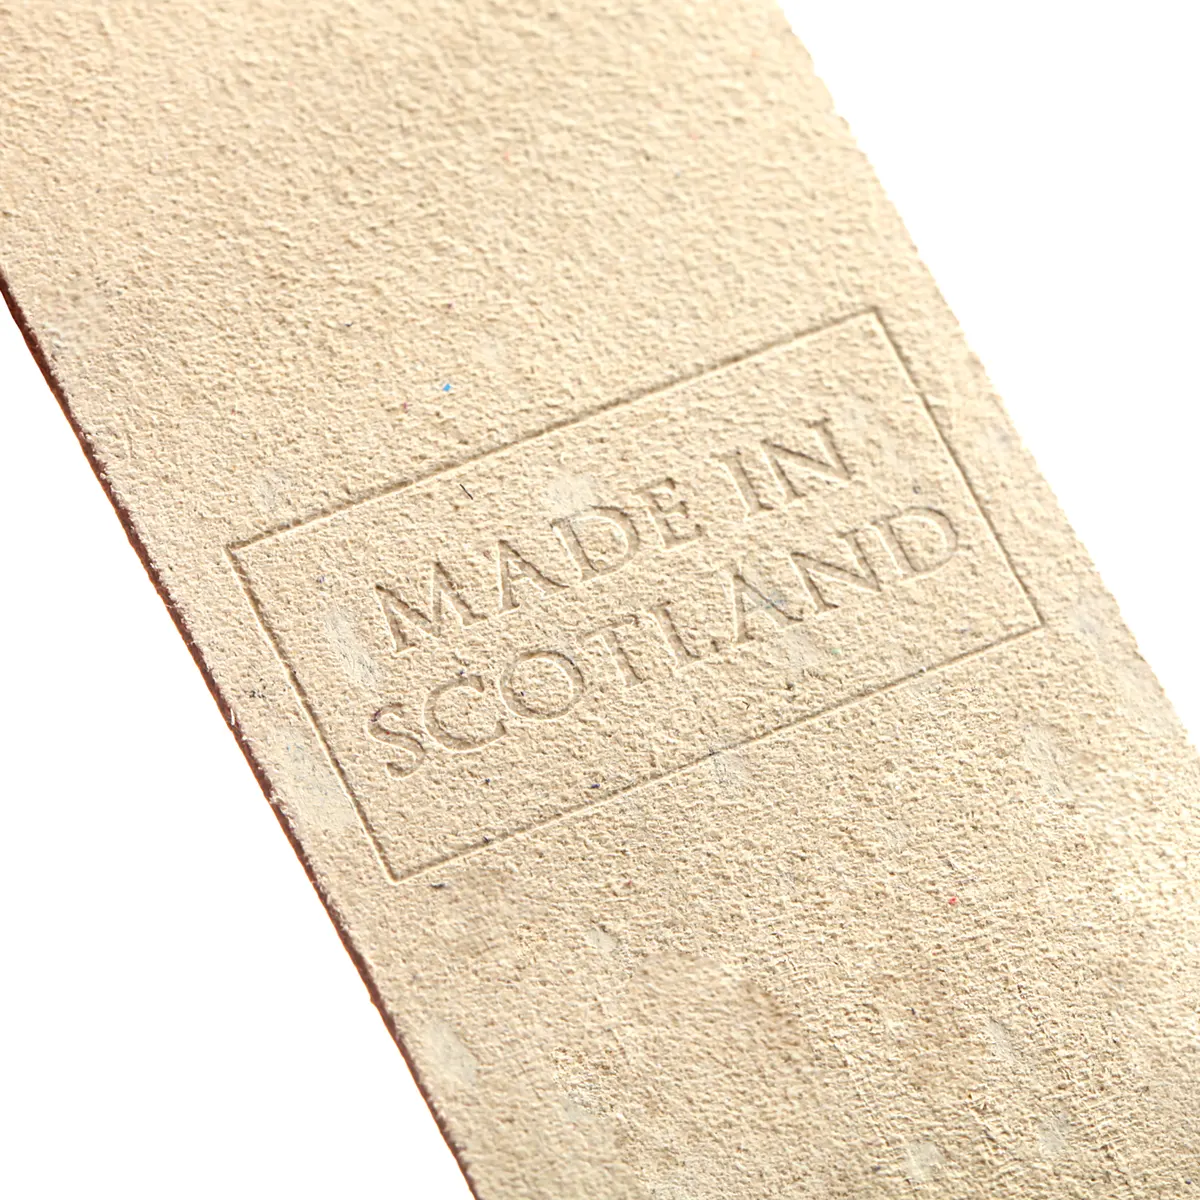 Lewis and Harris - Lesezeichen aus Leder in Creme - Made in Scotland